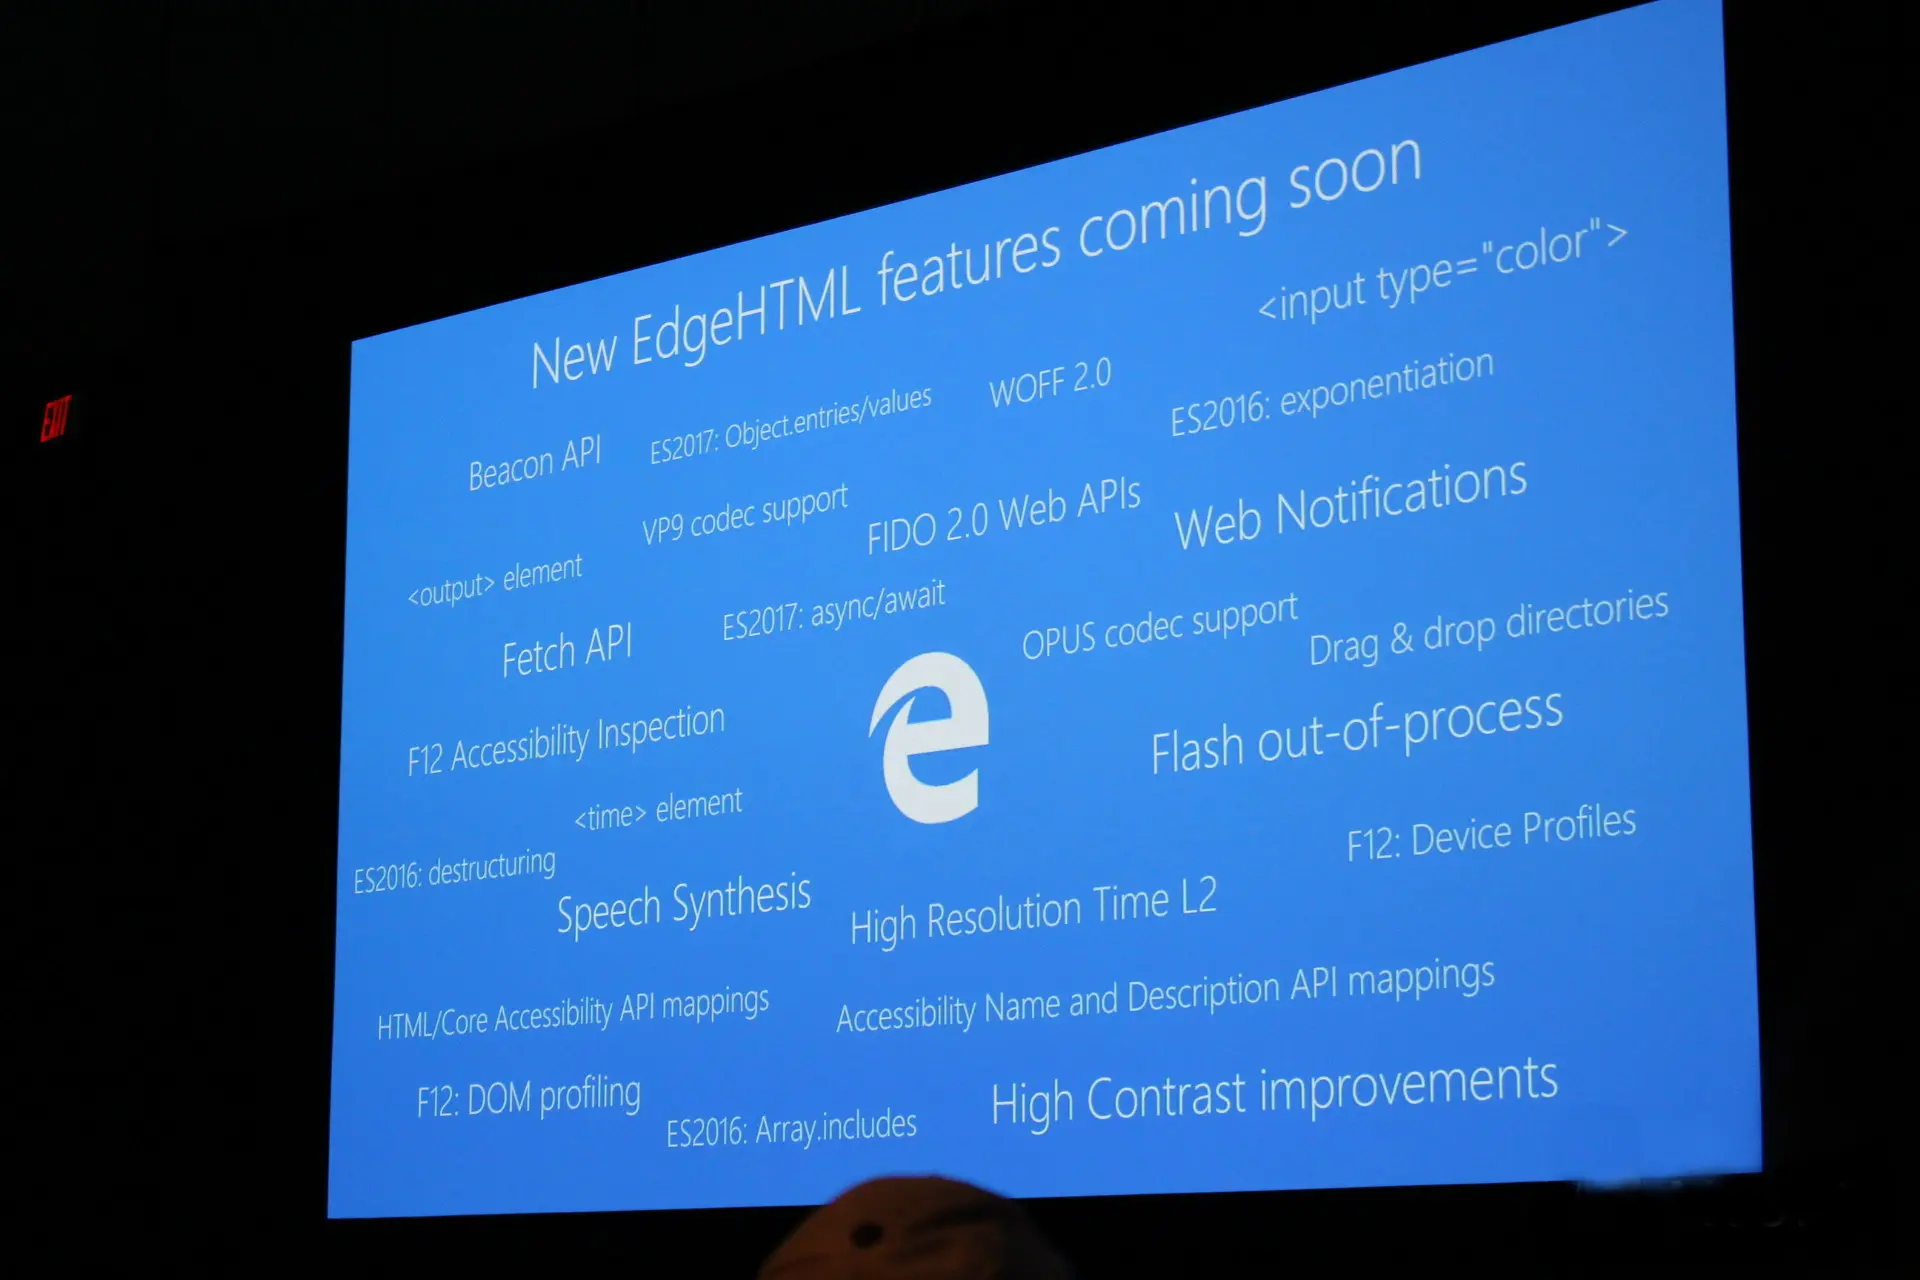 Microsoft Edge tendrá Ad-Blocker y soporte para Windows Hello #Build16